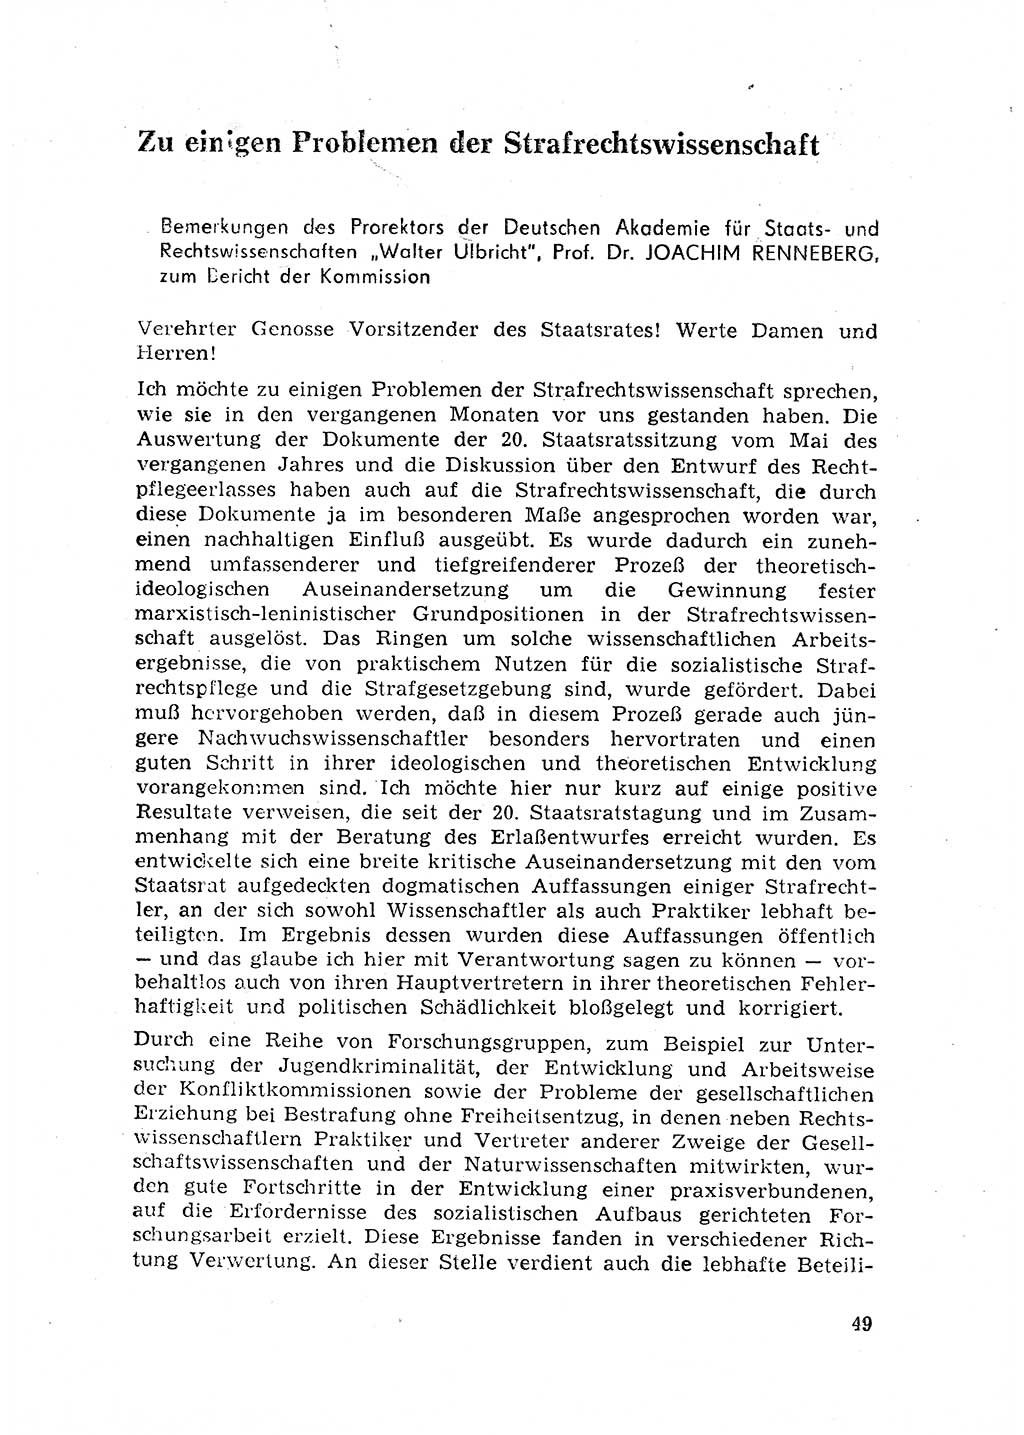 Rechtspflegeerlaß [Deutsche Demokratische Republik (DDR)] 1963, Seite 49 (R.-Pfl.-Erl. DDR 1963, S. 49)